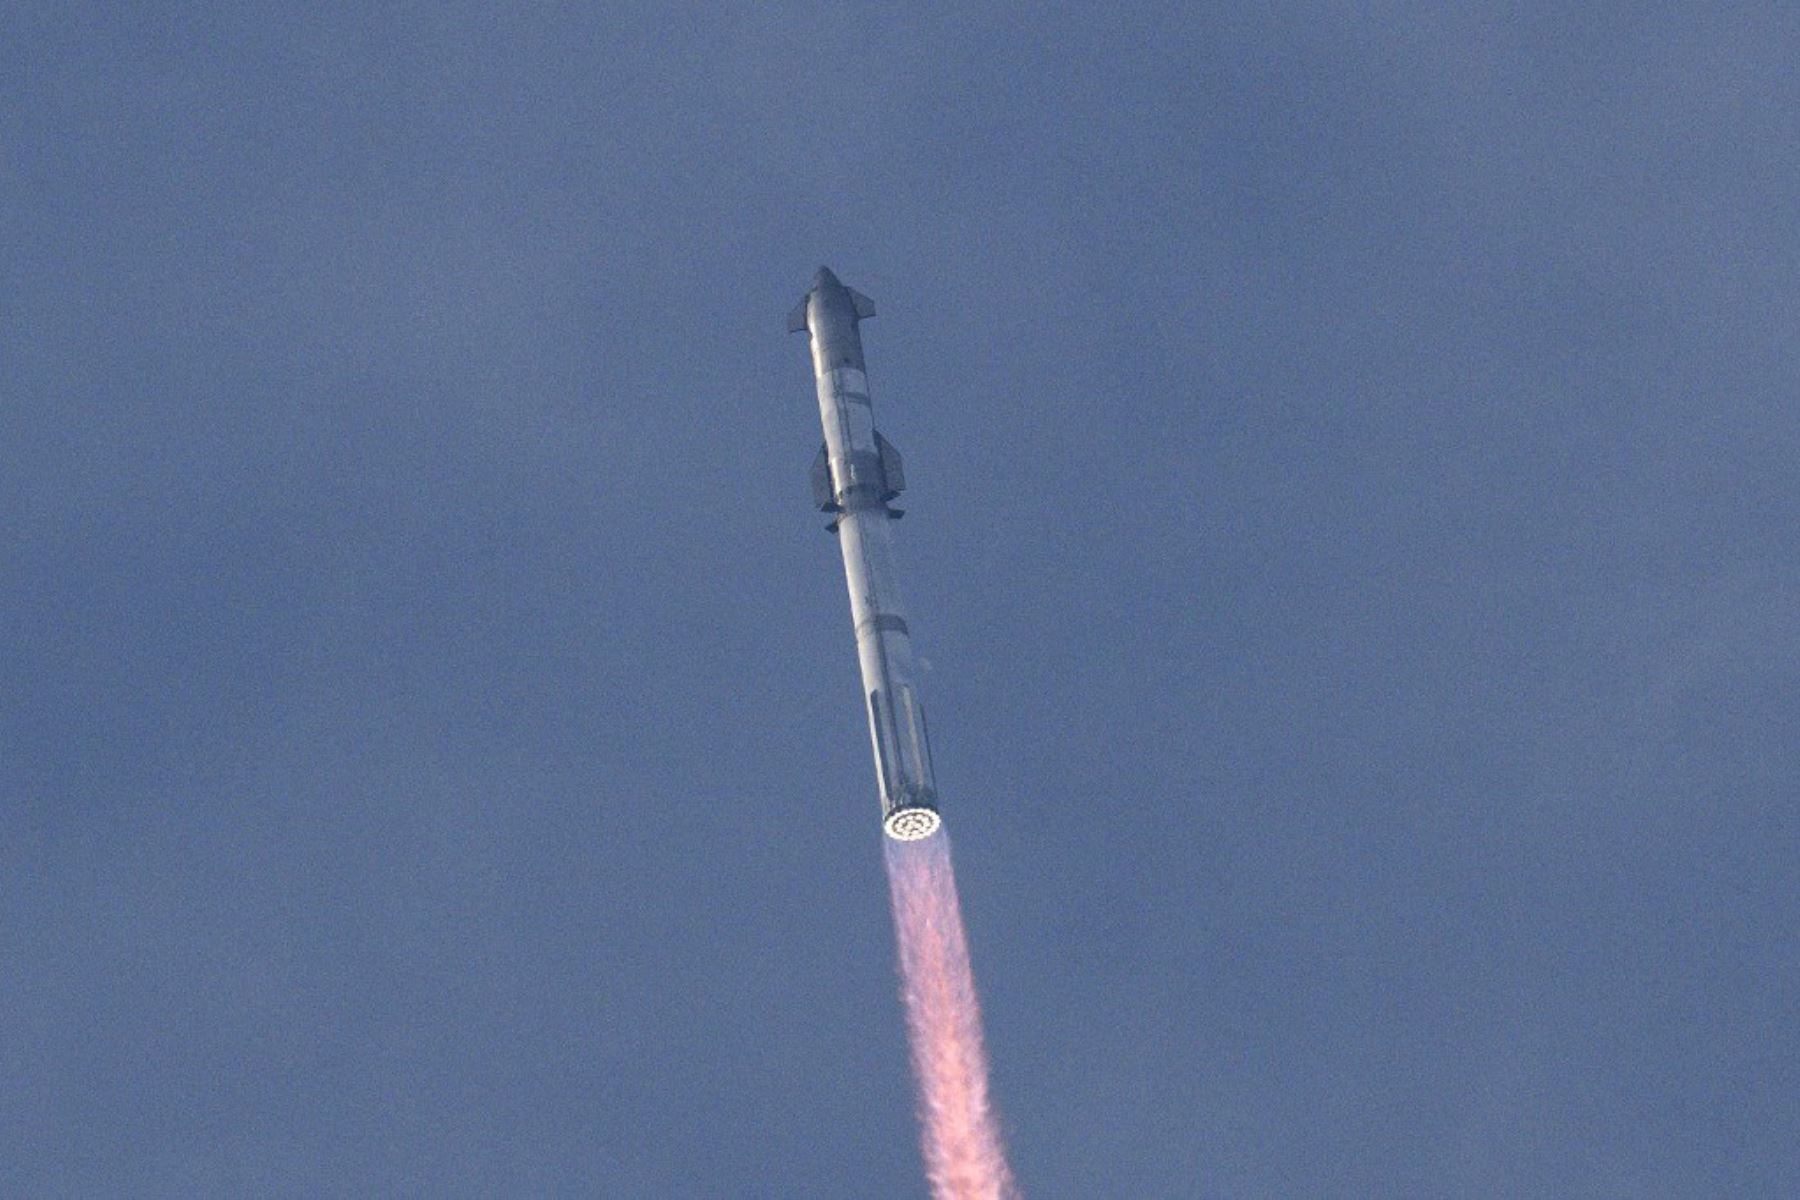 El gigantesco cohete Starship de SpaceX, que tiene como objetivo a largo plazo ser utilizado en viajes a la Luna y Marte, despegó este jueves de Estados Unidos para su tercer vuelo de prueba, tras dos intentos que terminaron en explosiones el año pasado. Foto: AFP